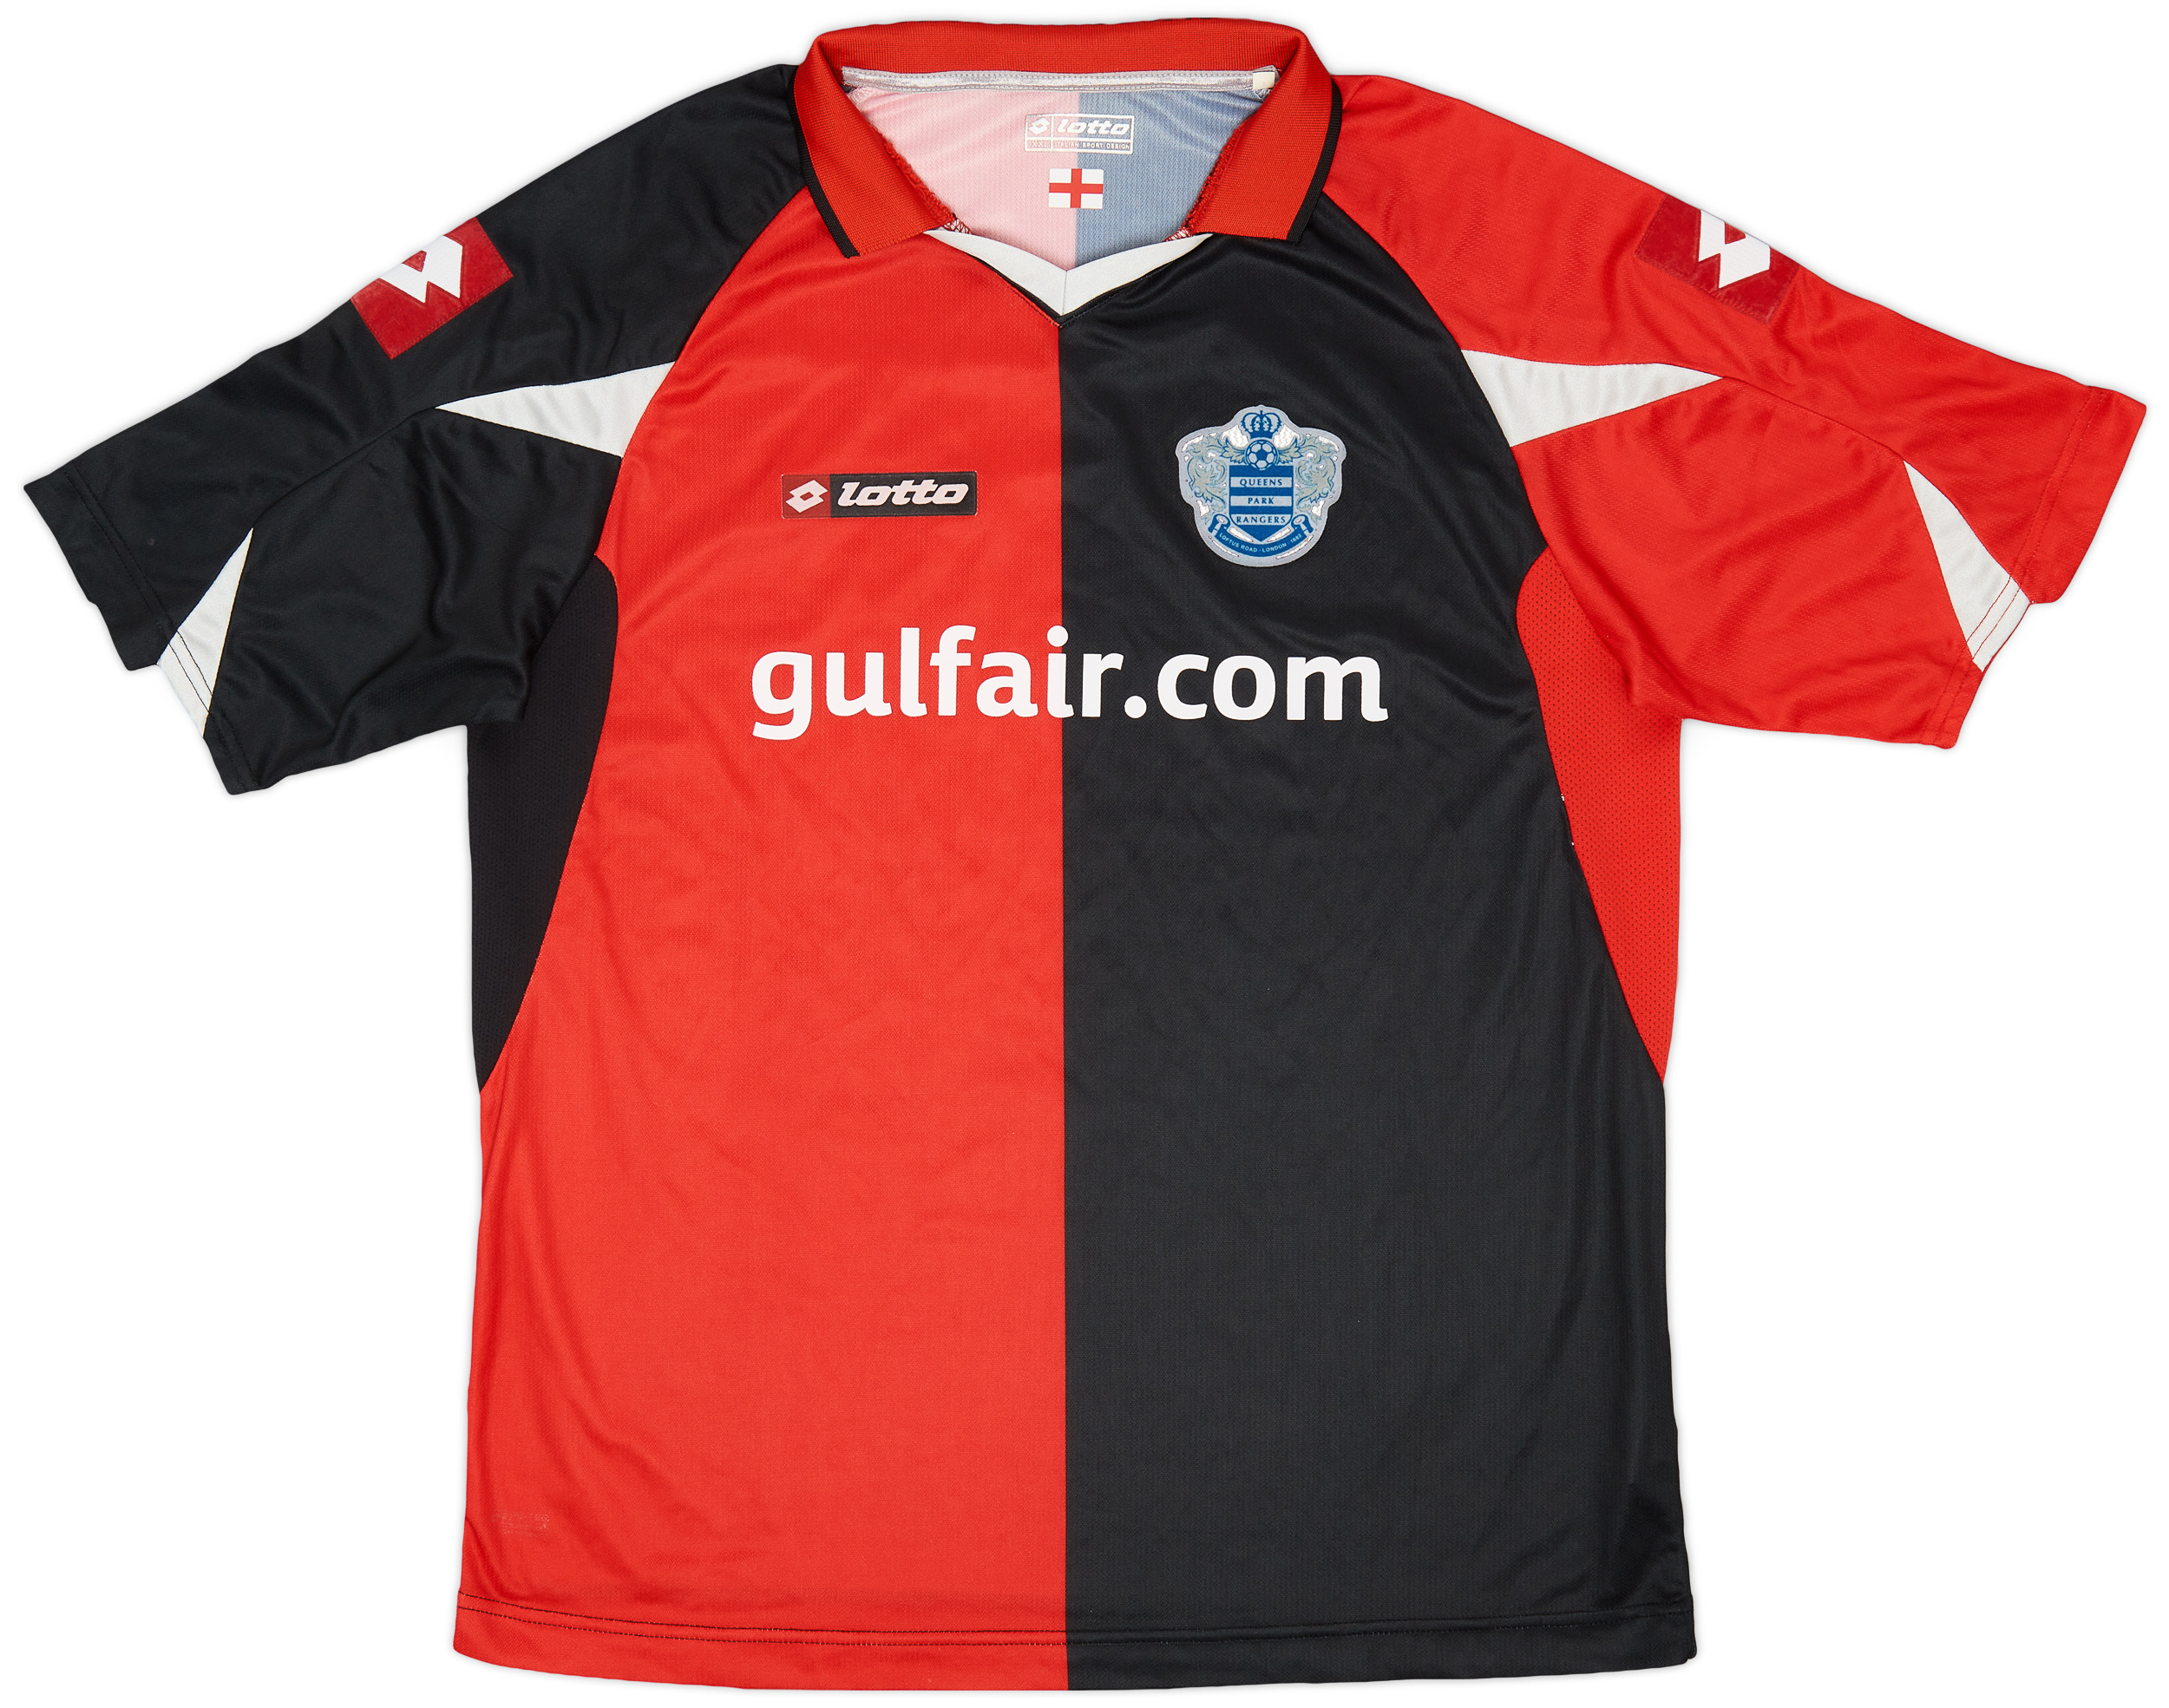 2010-11 QPR Away Shirt - 8/10 - ()